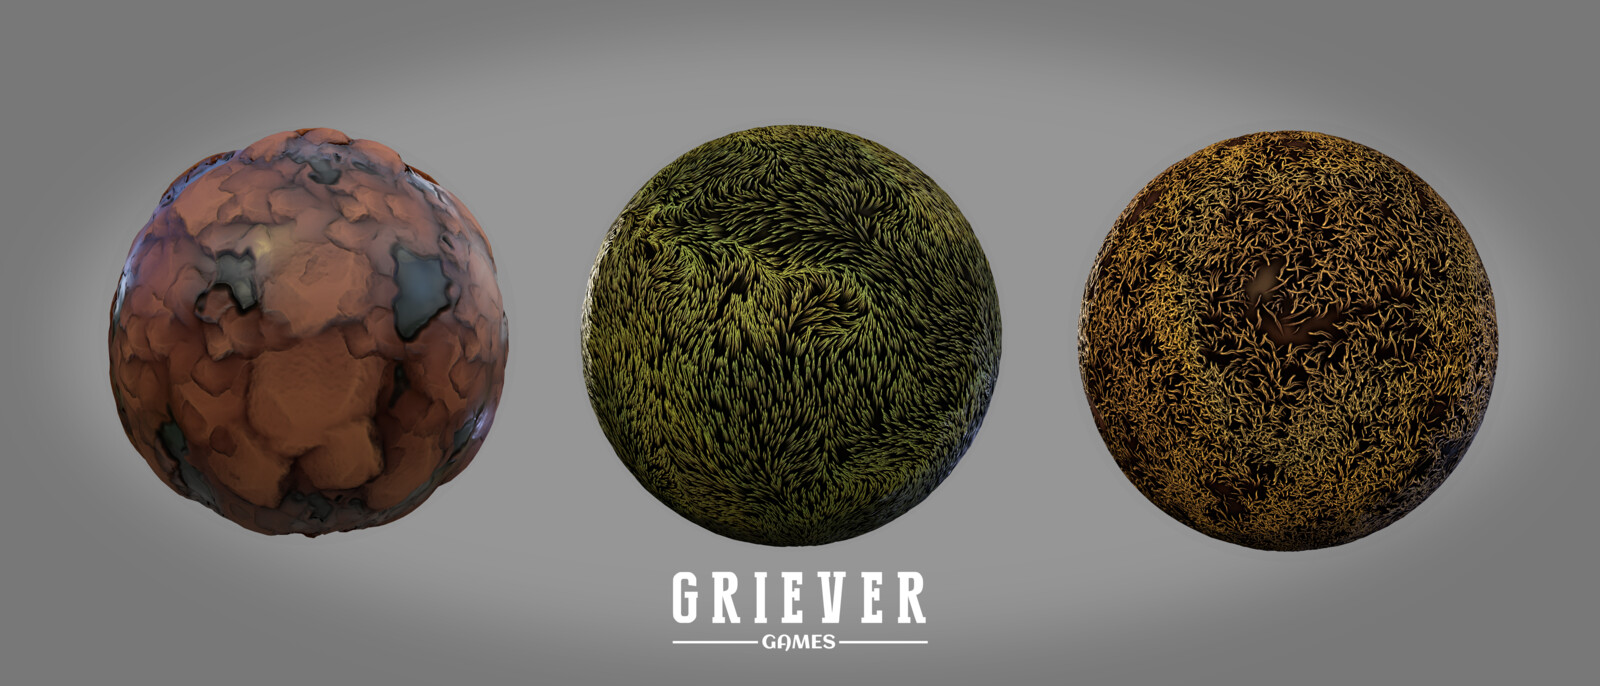 Ground Materials | Griever Games Environment Art